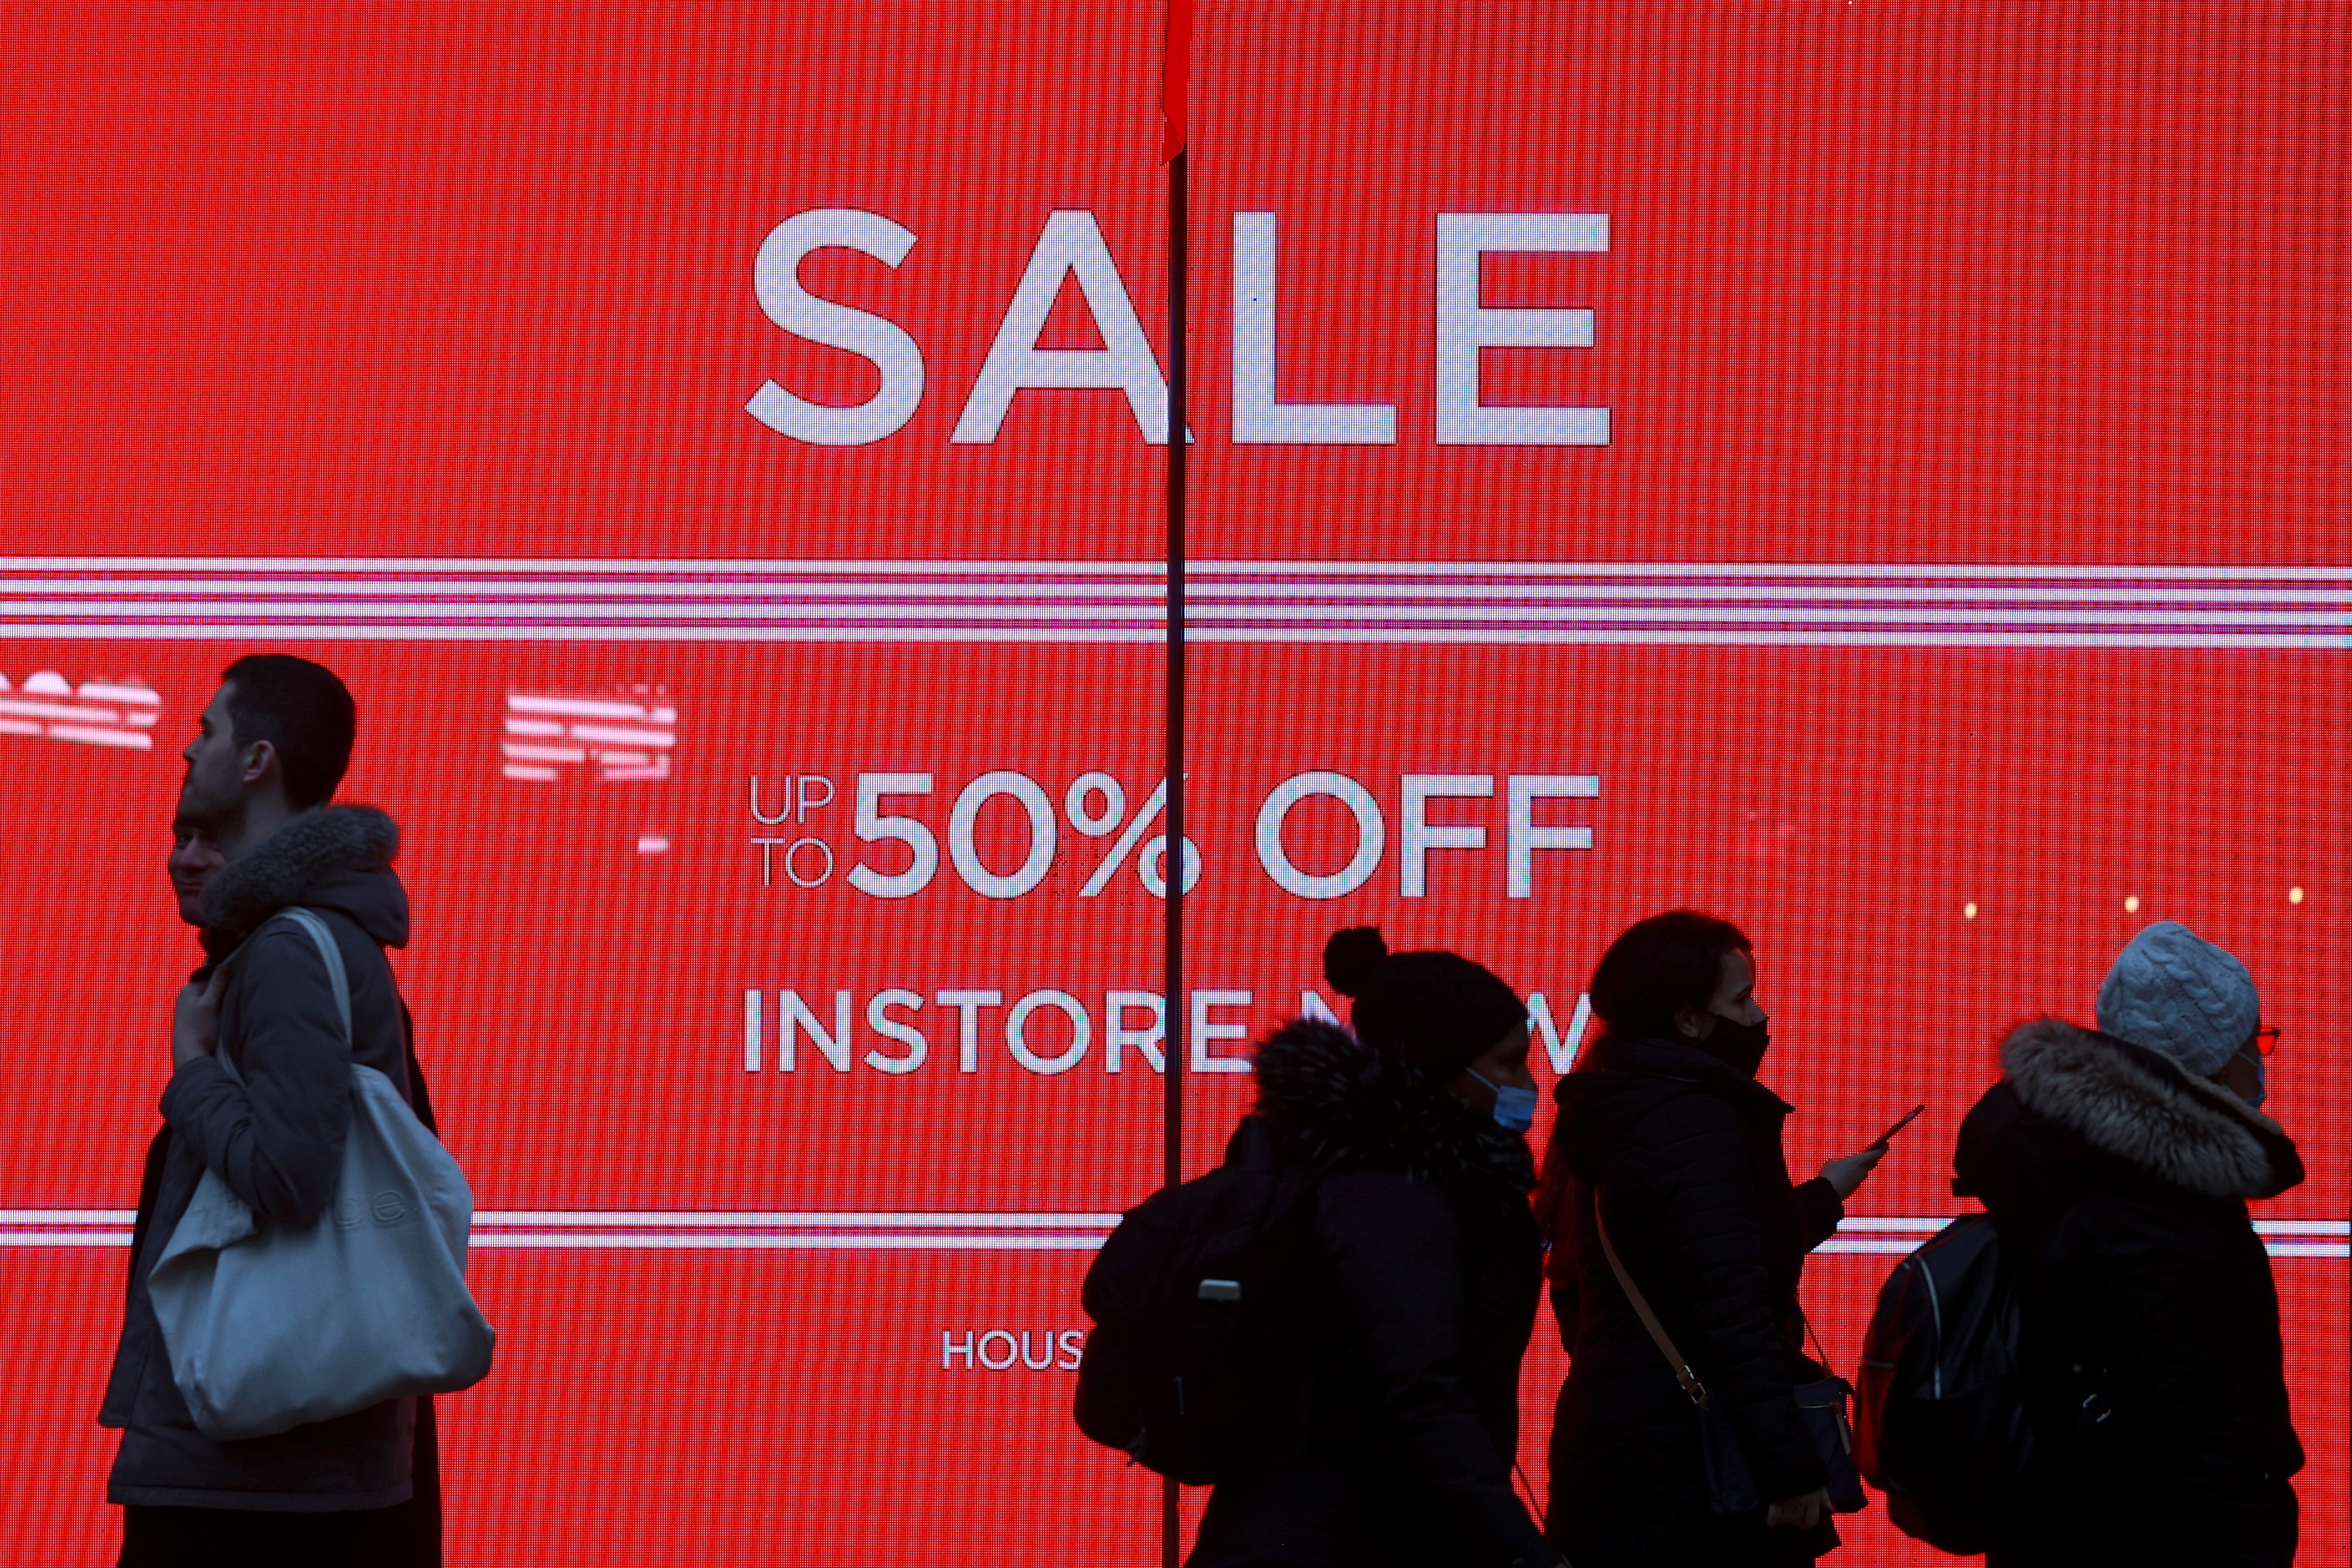 UK retailers turn positive on sales hopes after bleak winter